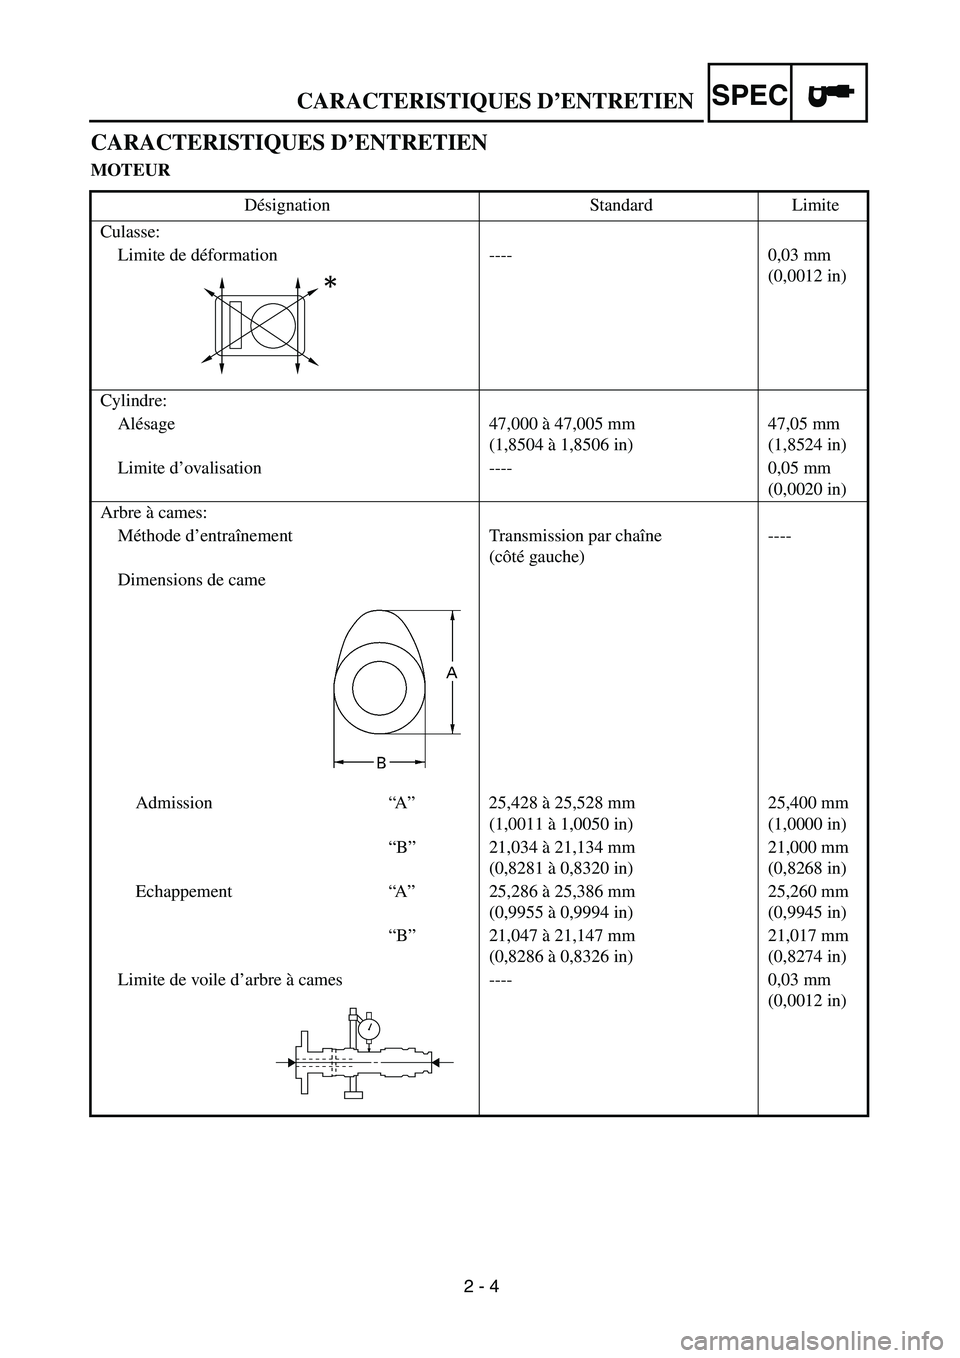 YAMAHA TTR90 2005  Notices Demploi (in French) 2 - 4
CARACTERISTIQUES D’ENTRETIENSPEC
CARACTERISTIQUES D’ENTRETIEN
MOTEUR
Désignation Standard Limite
Culasse:
Limite de déformation ---- 0,03 mm 
(0,0012 in)
Cylindre:
Alésage 47,000 à 47,00